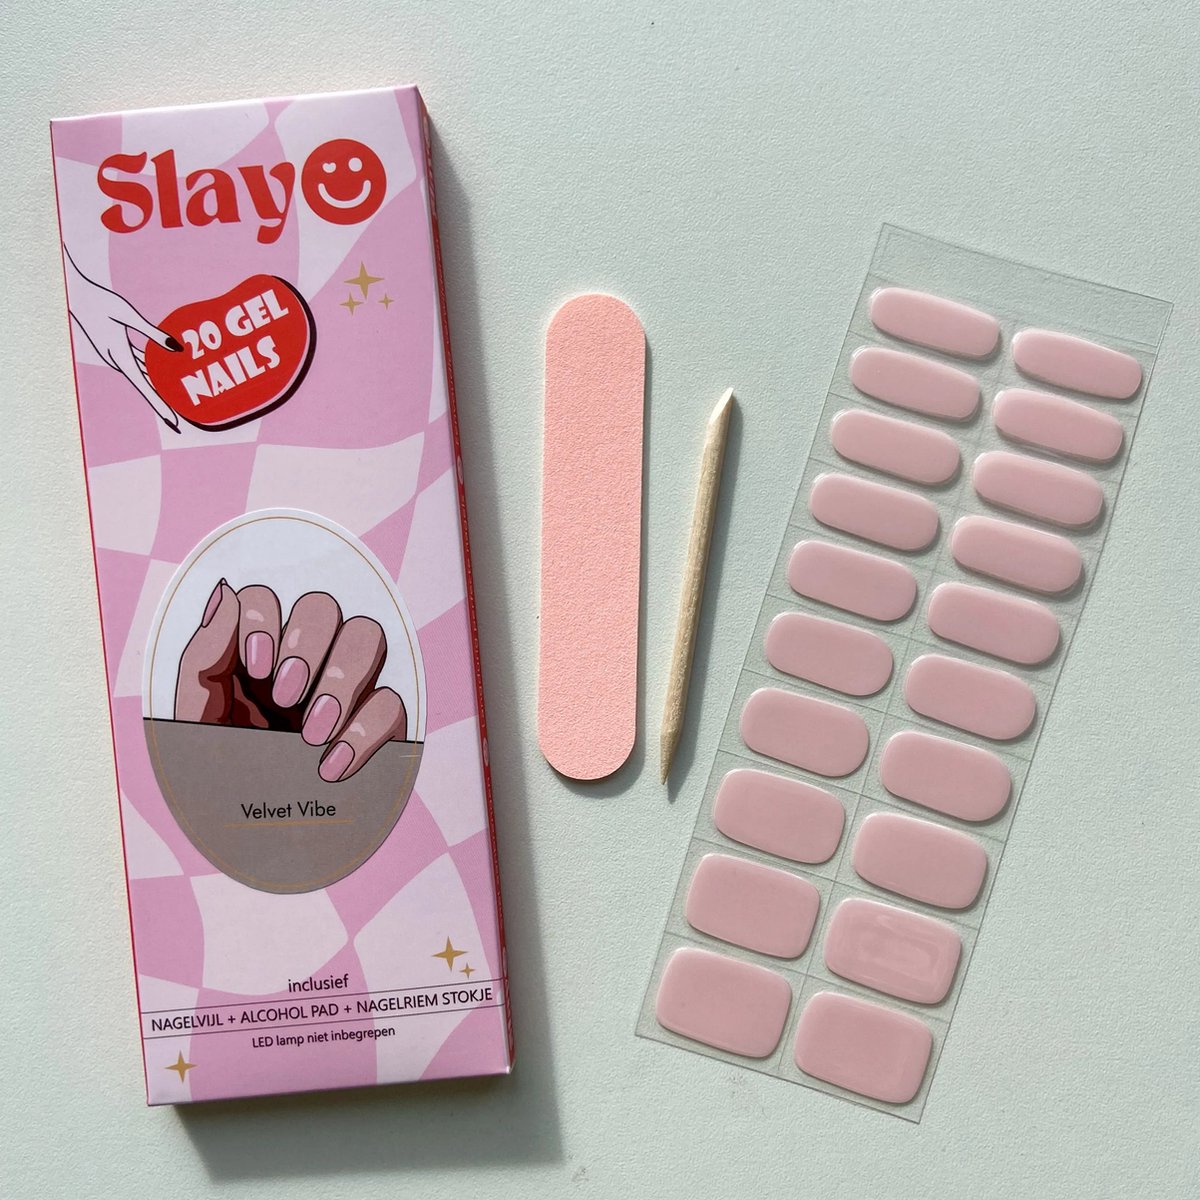 Slayo© - Gellak Stickers - Velvet Vibe - Nagelstickers - Gel Nail Wrap - Nail Art Stickers - Nail Art - Gellak Nagels - Gel Nagel Stickers - Nail Wraps - LED/UV lamp nodig